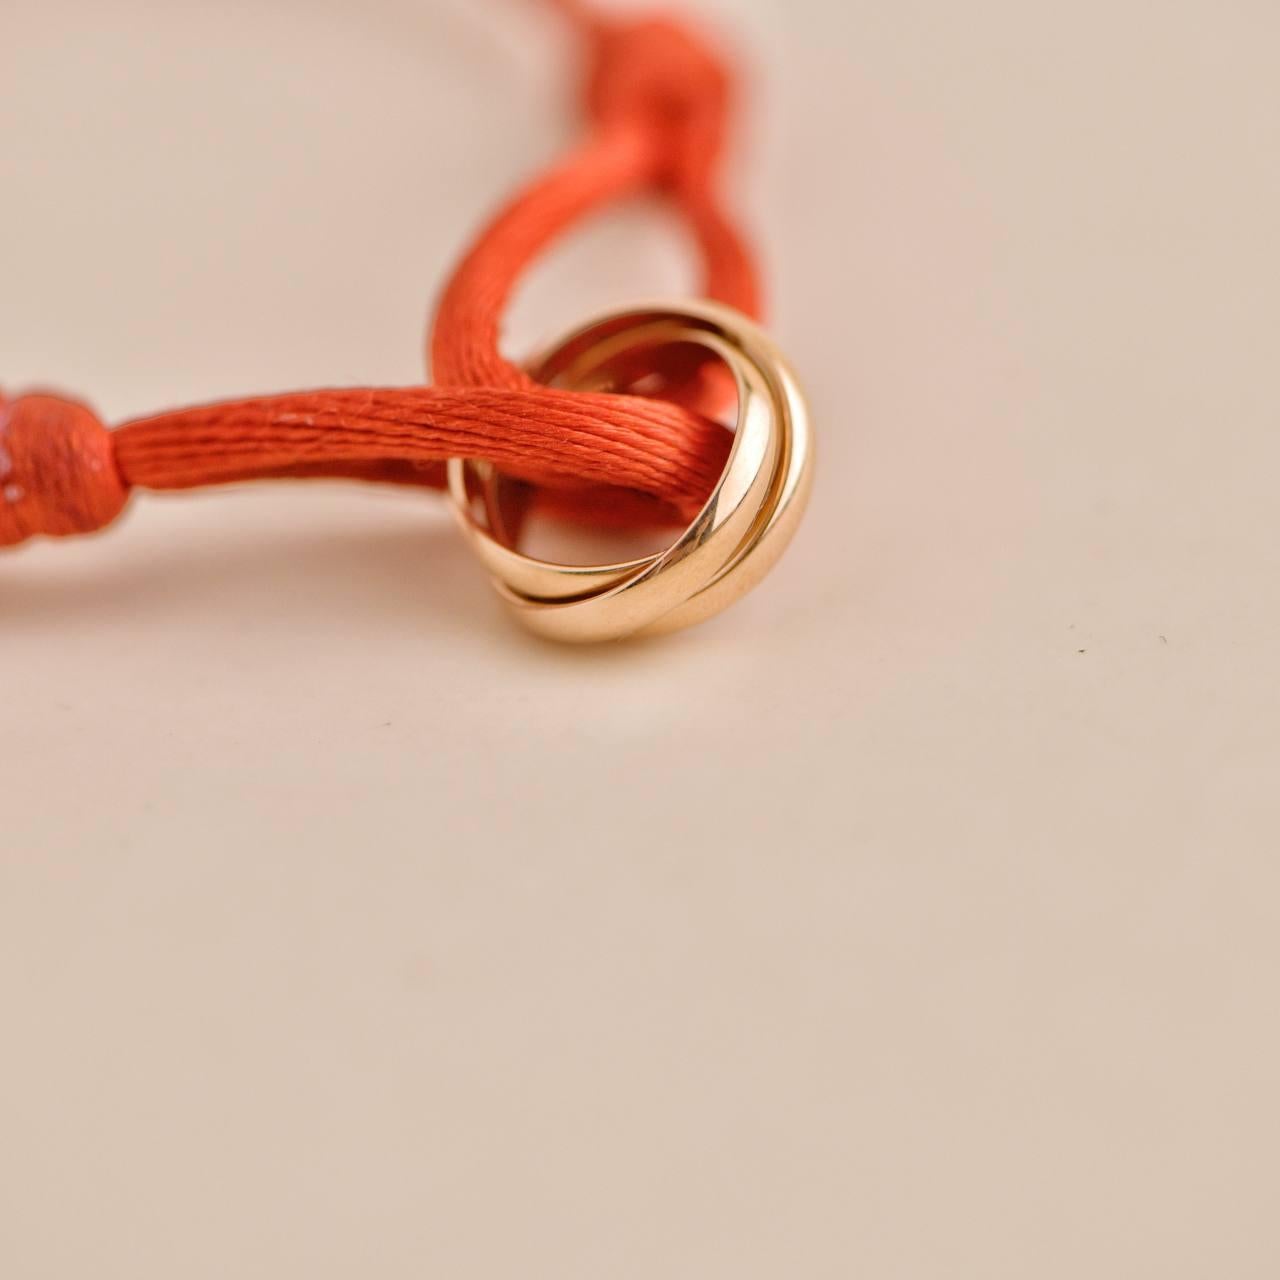 cartier red string bracelet